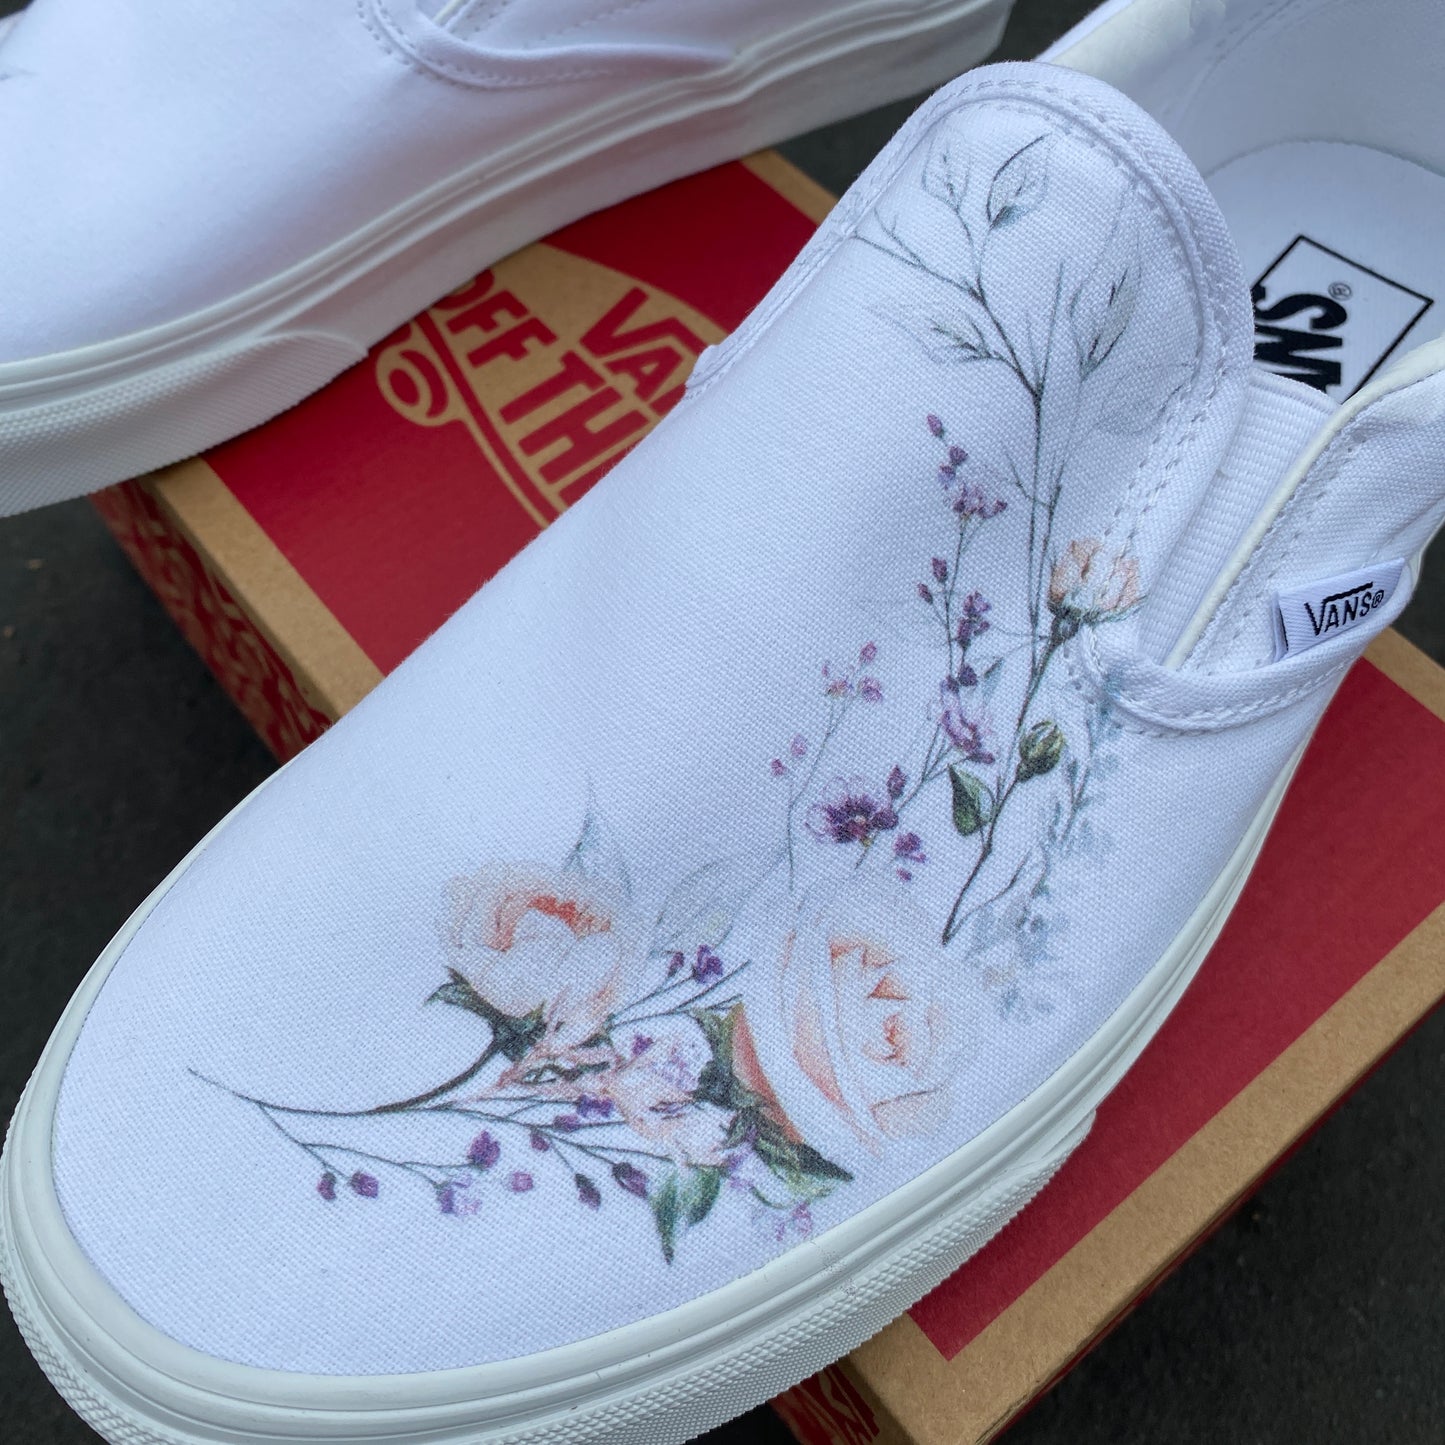 Flower Wreath Slip Ons - Custom Vans Shoes